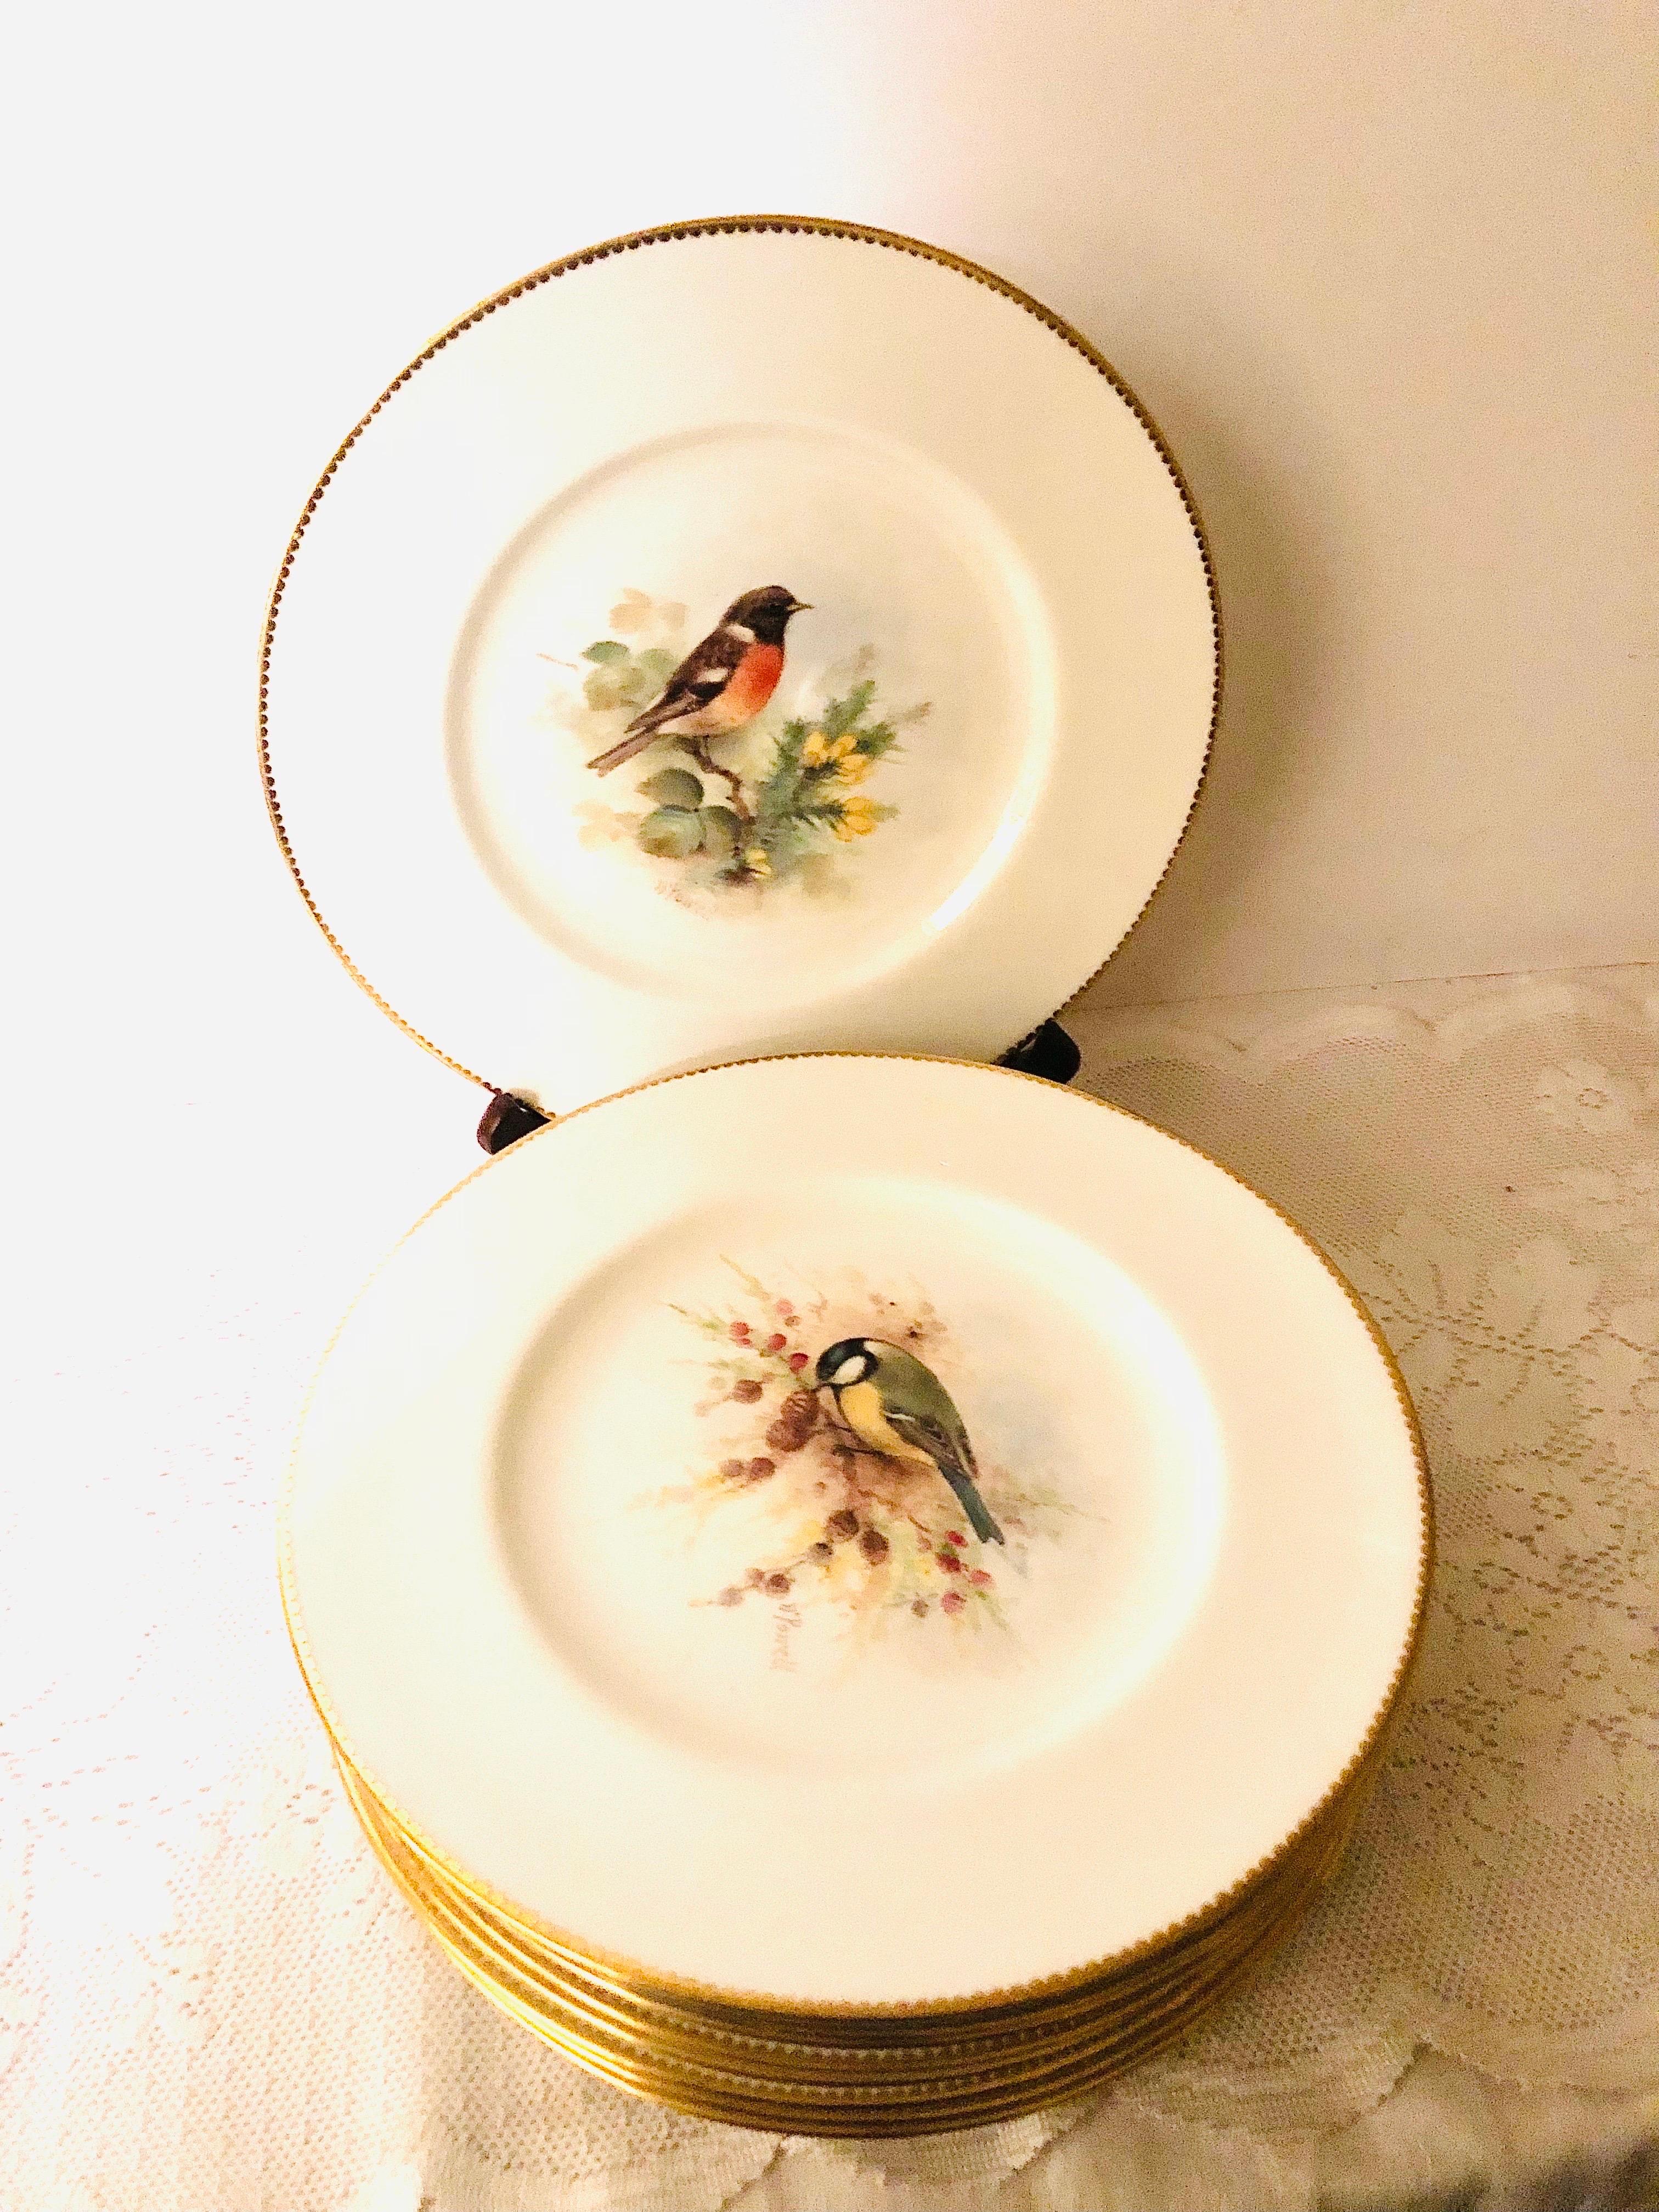 Je souhaite vous présenter ce fabuleux ensemble de onze assiettes à dîner Royal Worcester, chacune peinte de façon magistrale avec différents oiseaux dans leur habitat naturel. Chaque assiette porte le nom de l'oiseau peint sur le devant, inscrit au